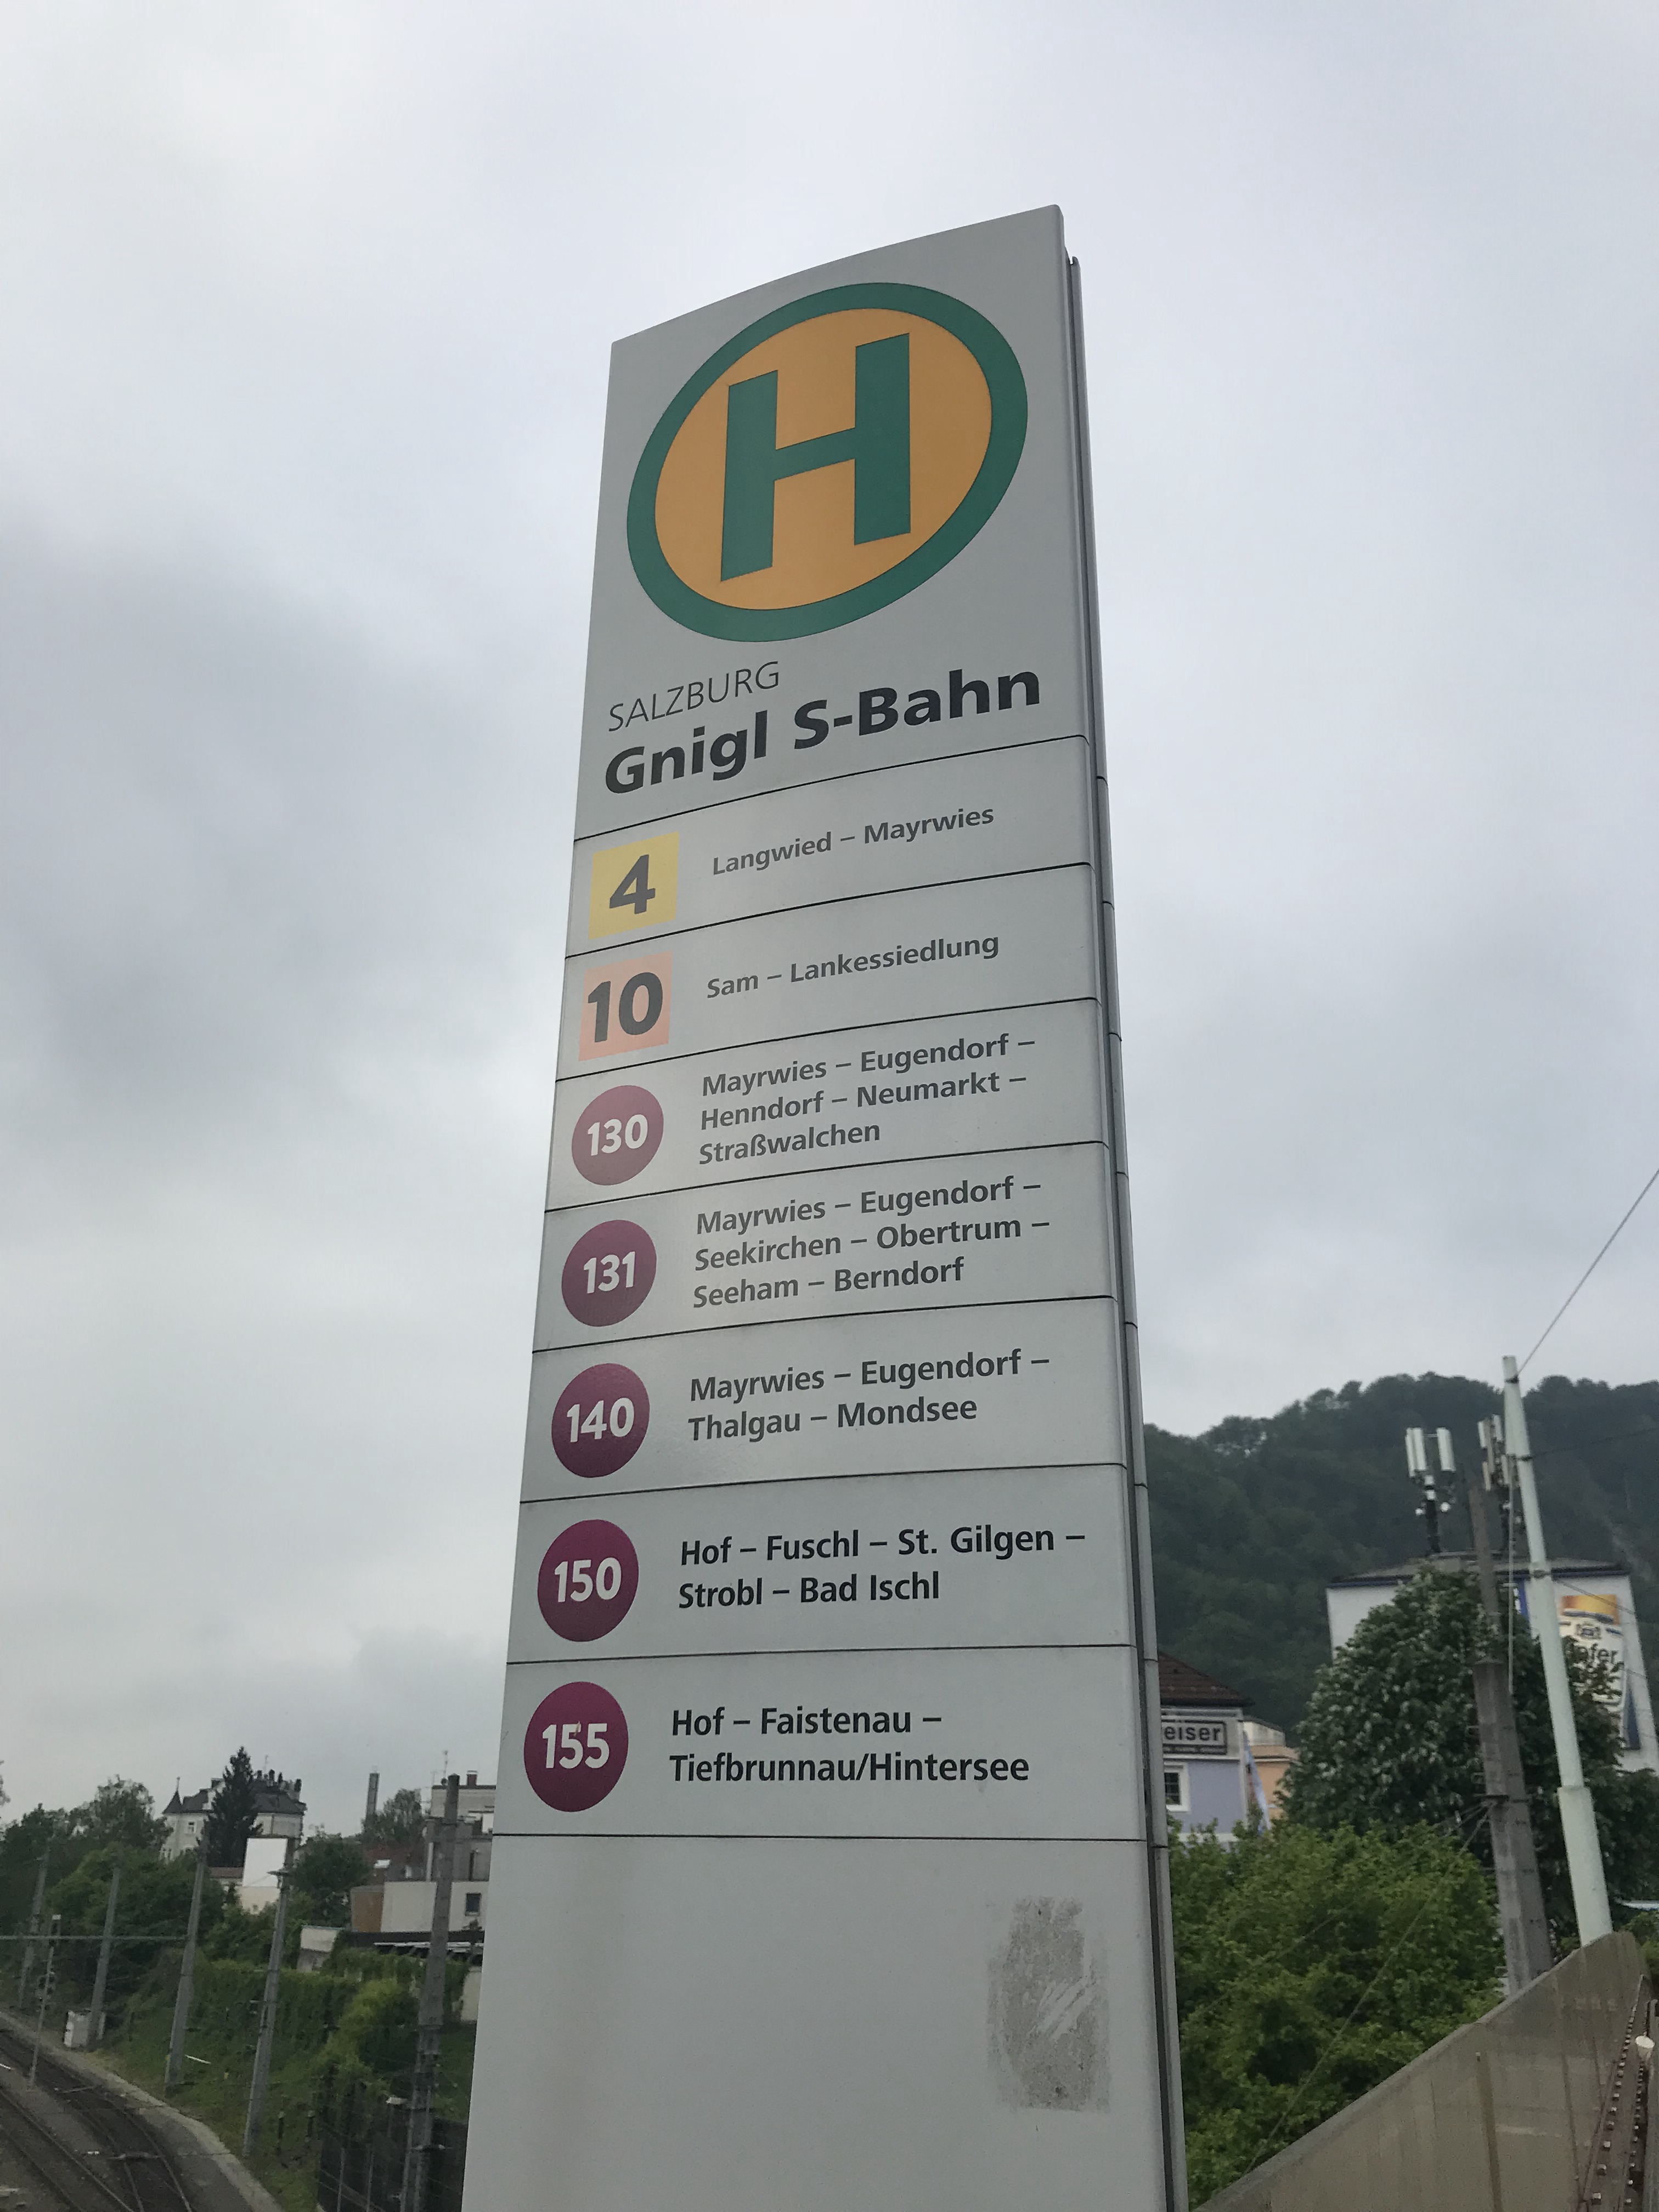 Salzburg to Hallstatt Bus 150 Stop at Gnigl S-Bahn